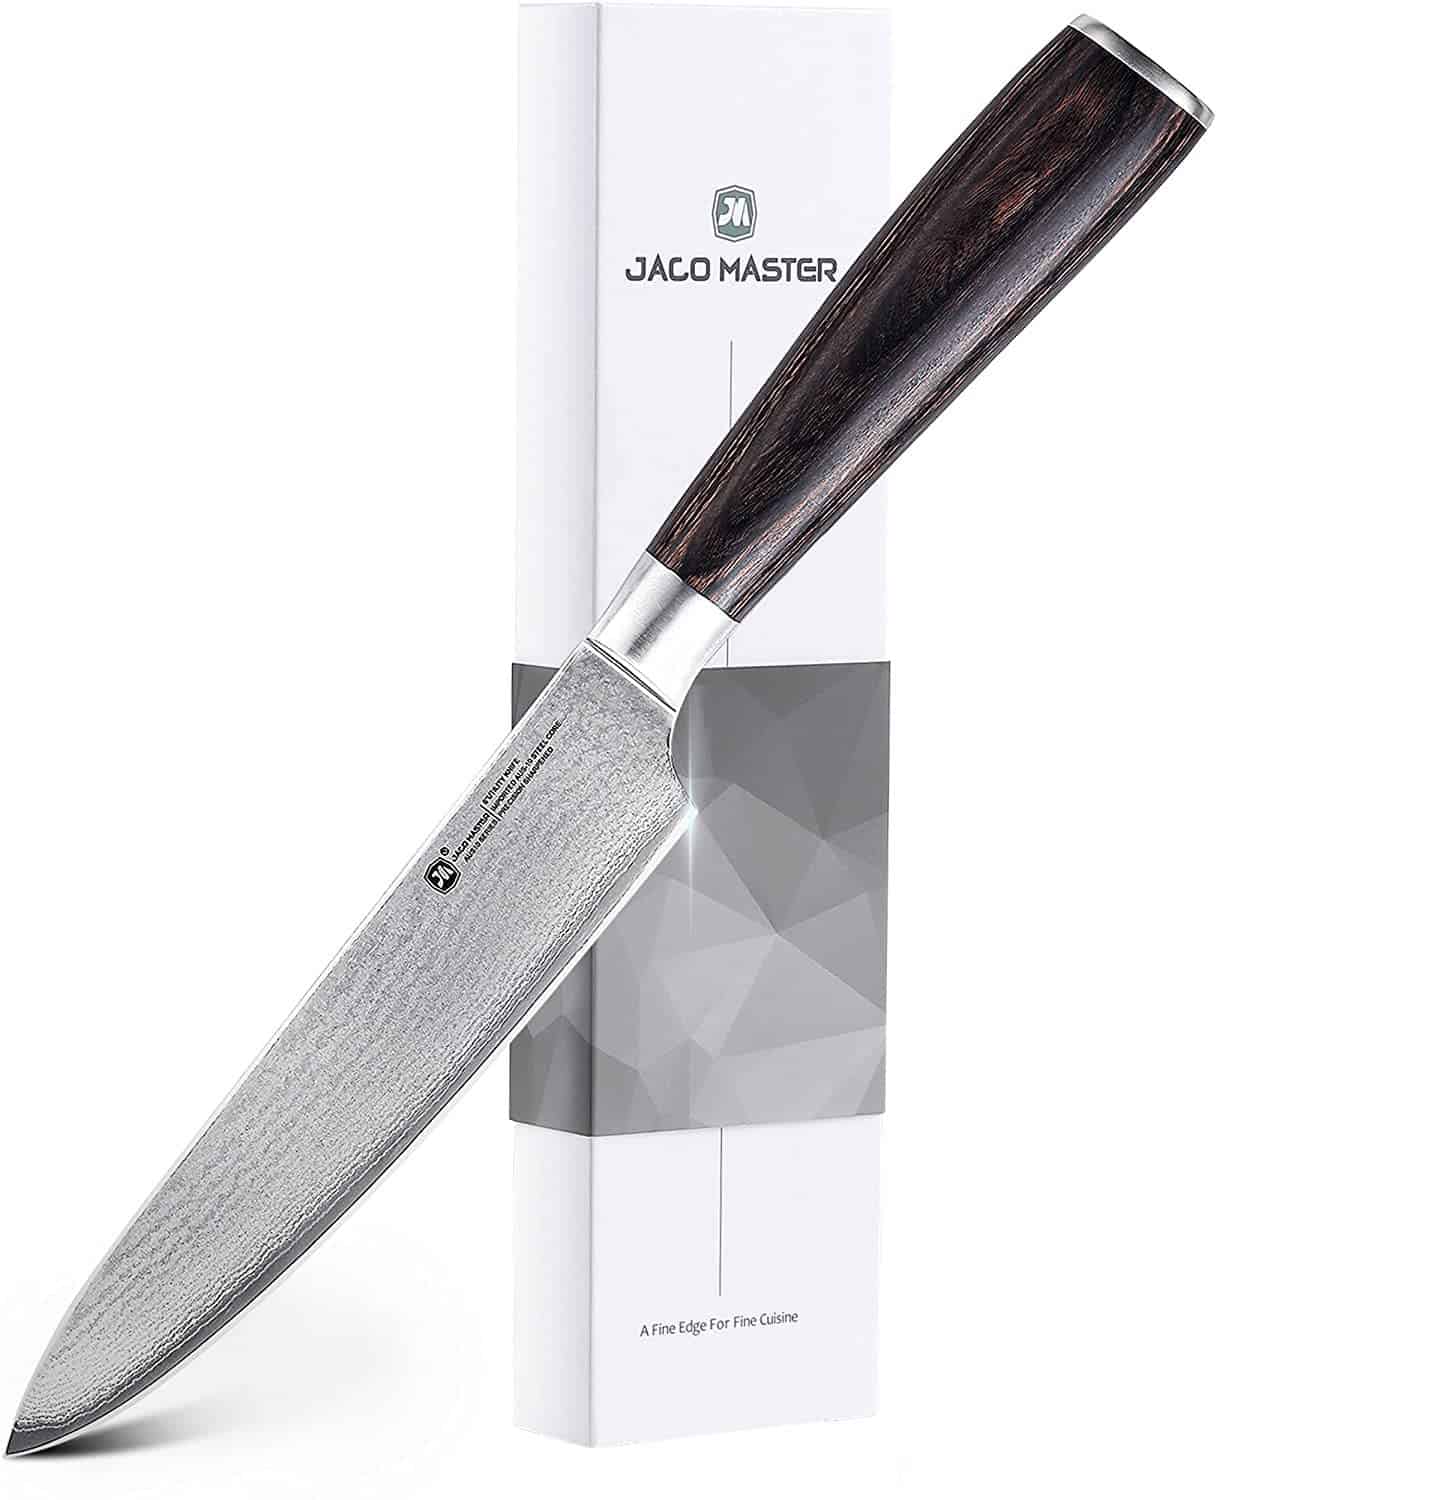 Bästa budget AUS 10 japansk stålkniv- Jaco Master 6 Utility Chef Knife